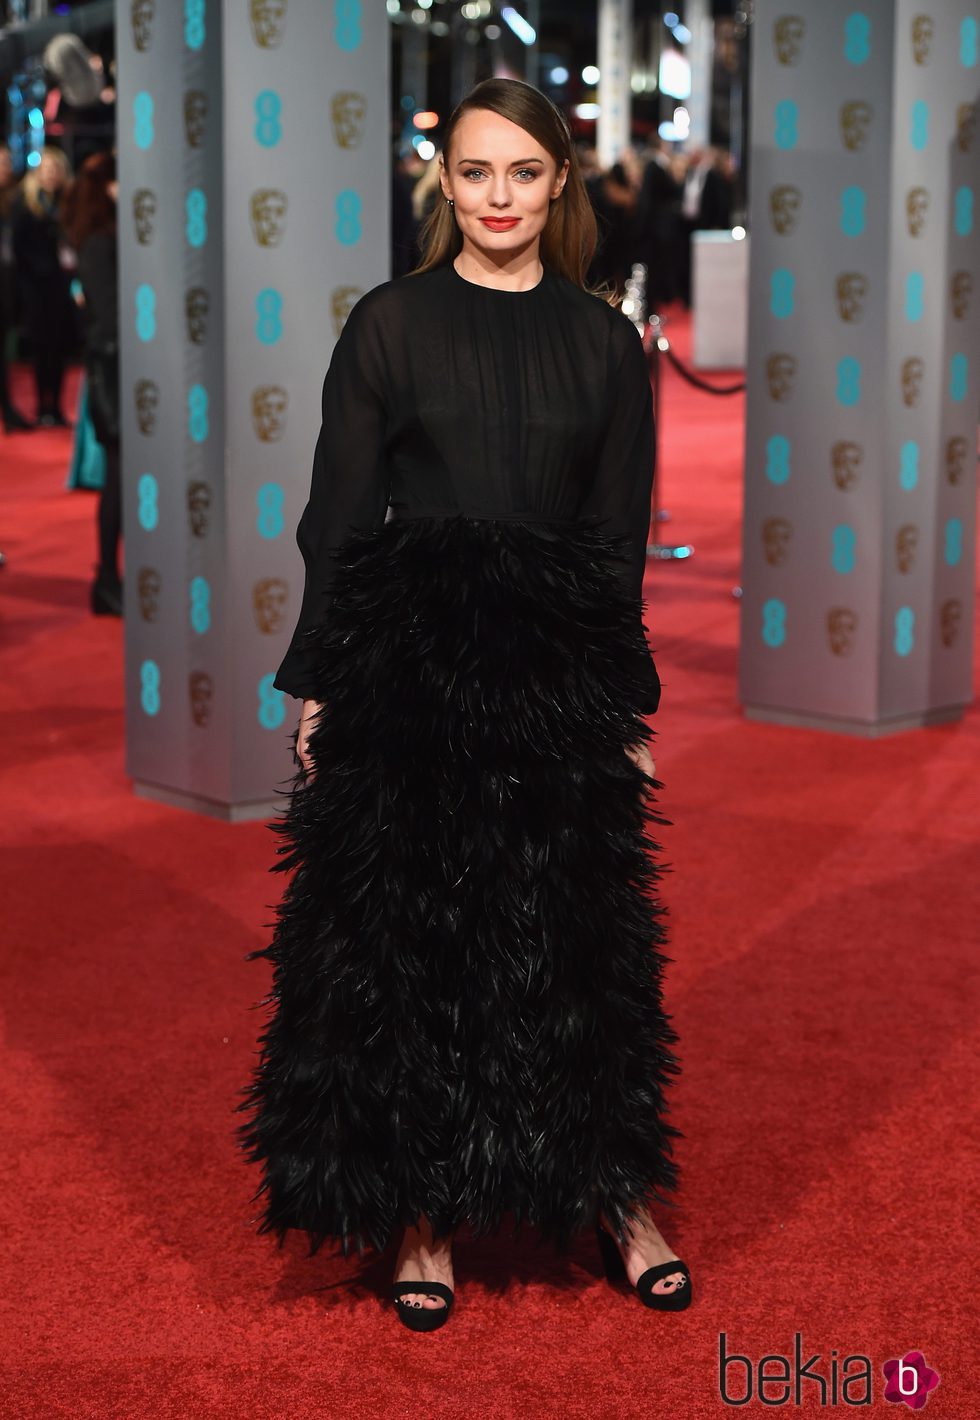 Laura Haddock con un diseño total black de plumas en la alfombra roja de los BAFTA 2016